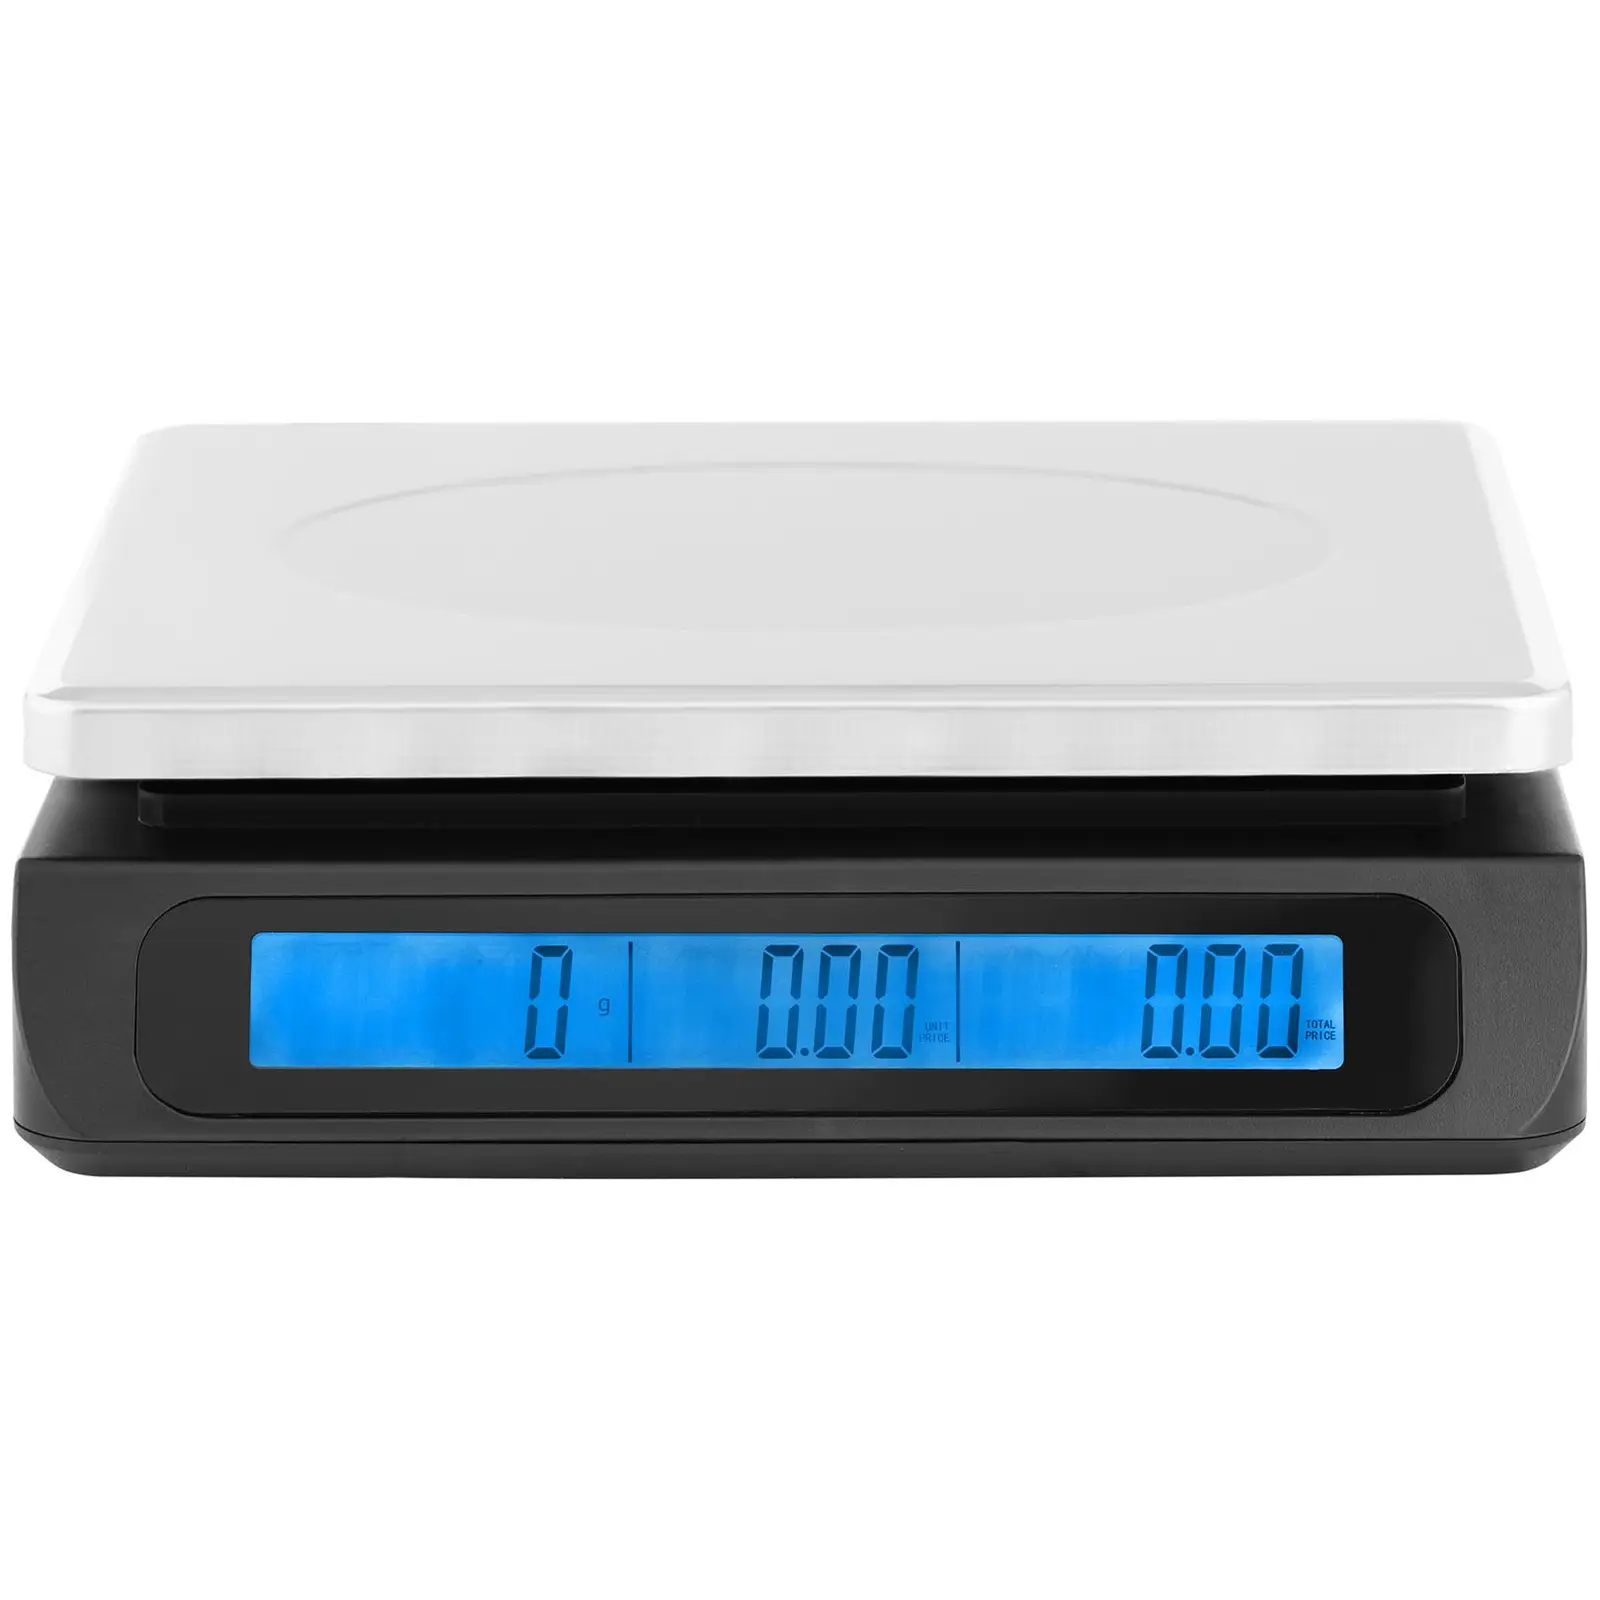 Balanza digital para control - 30 kg / 1 g - Pantalla LCD doble